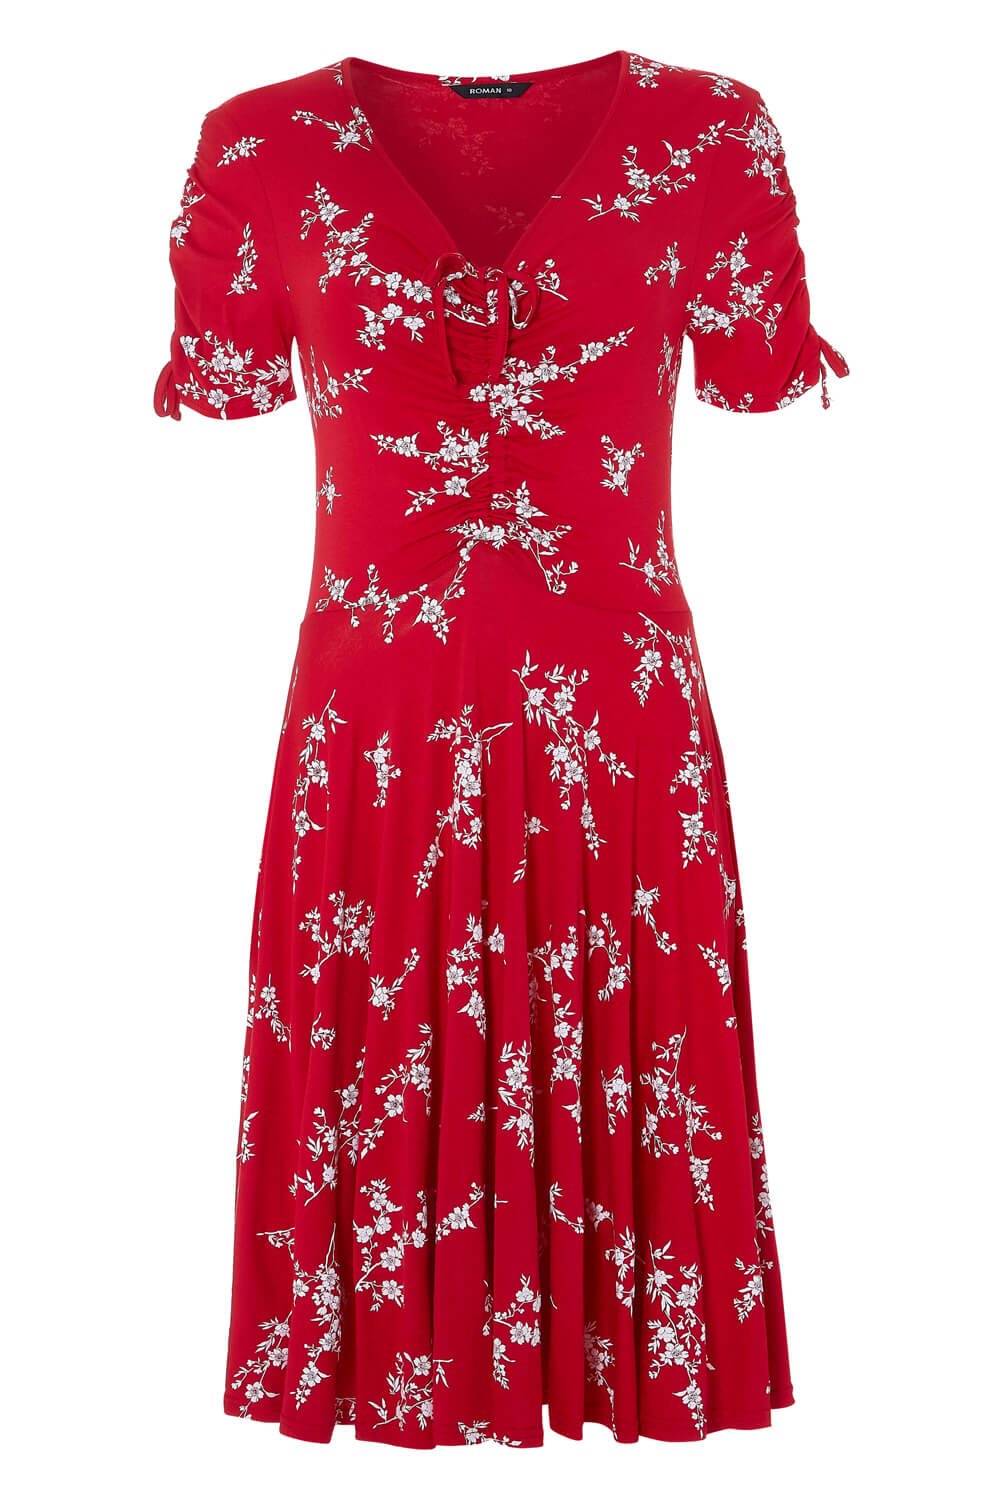 Floral V-Neck Short Sleeve Dress in Red - Roman Originals UK